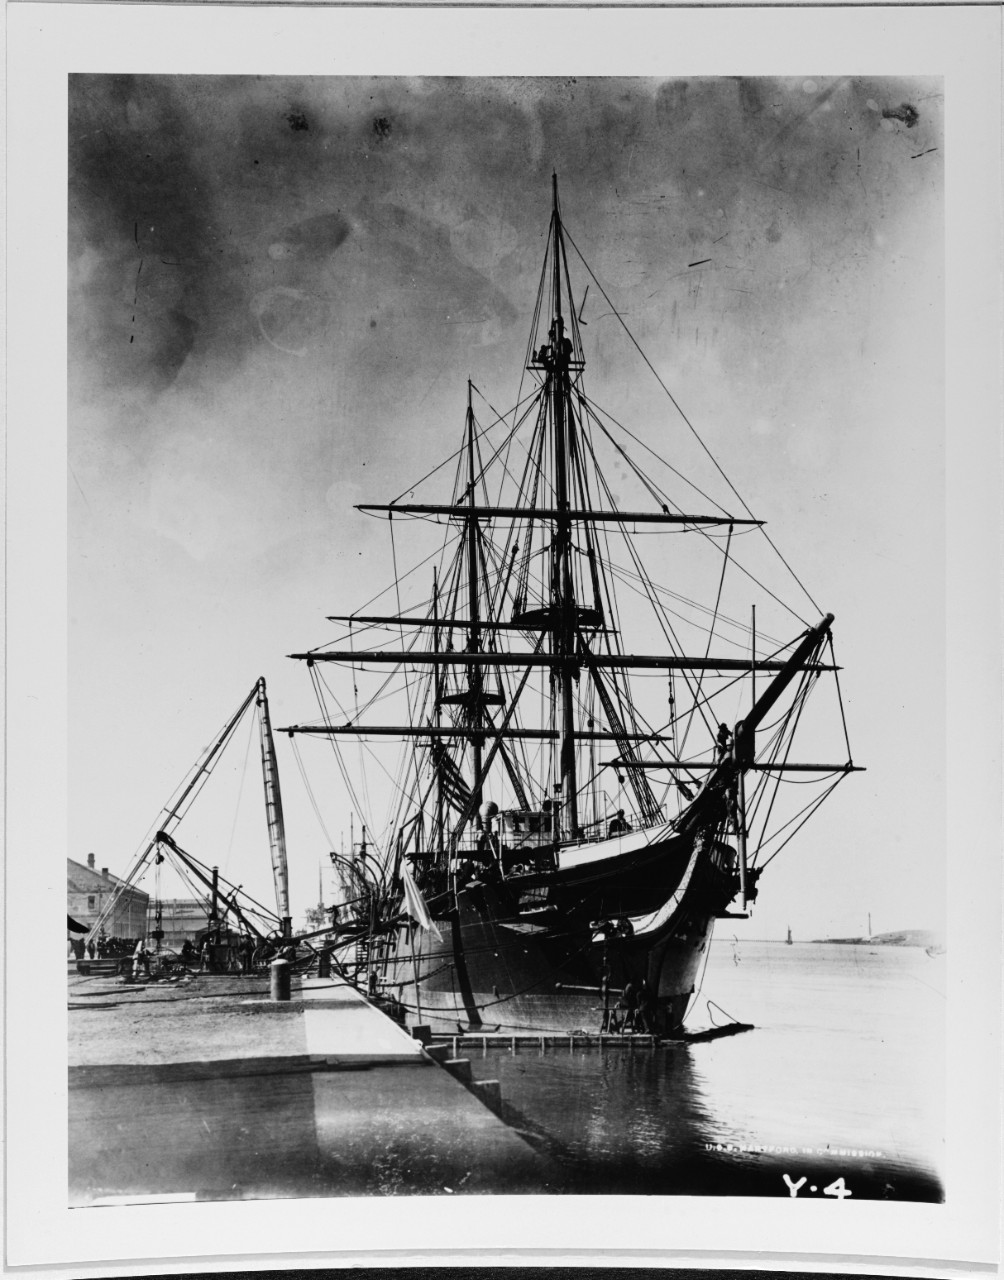 USS HARTFORD (1858-1926)